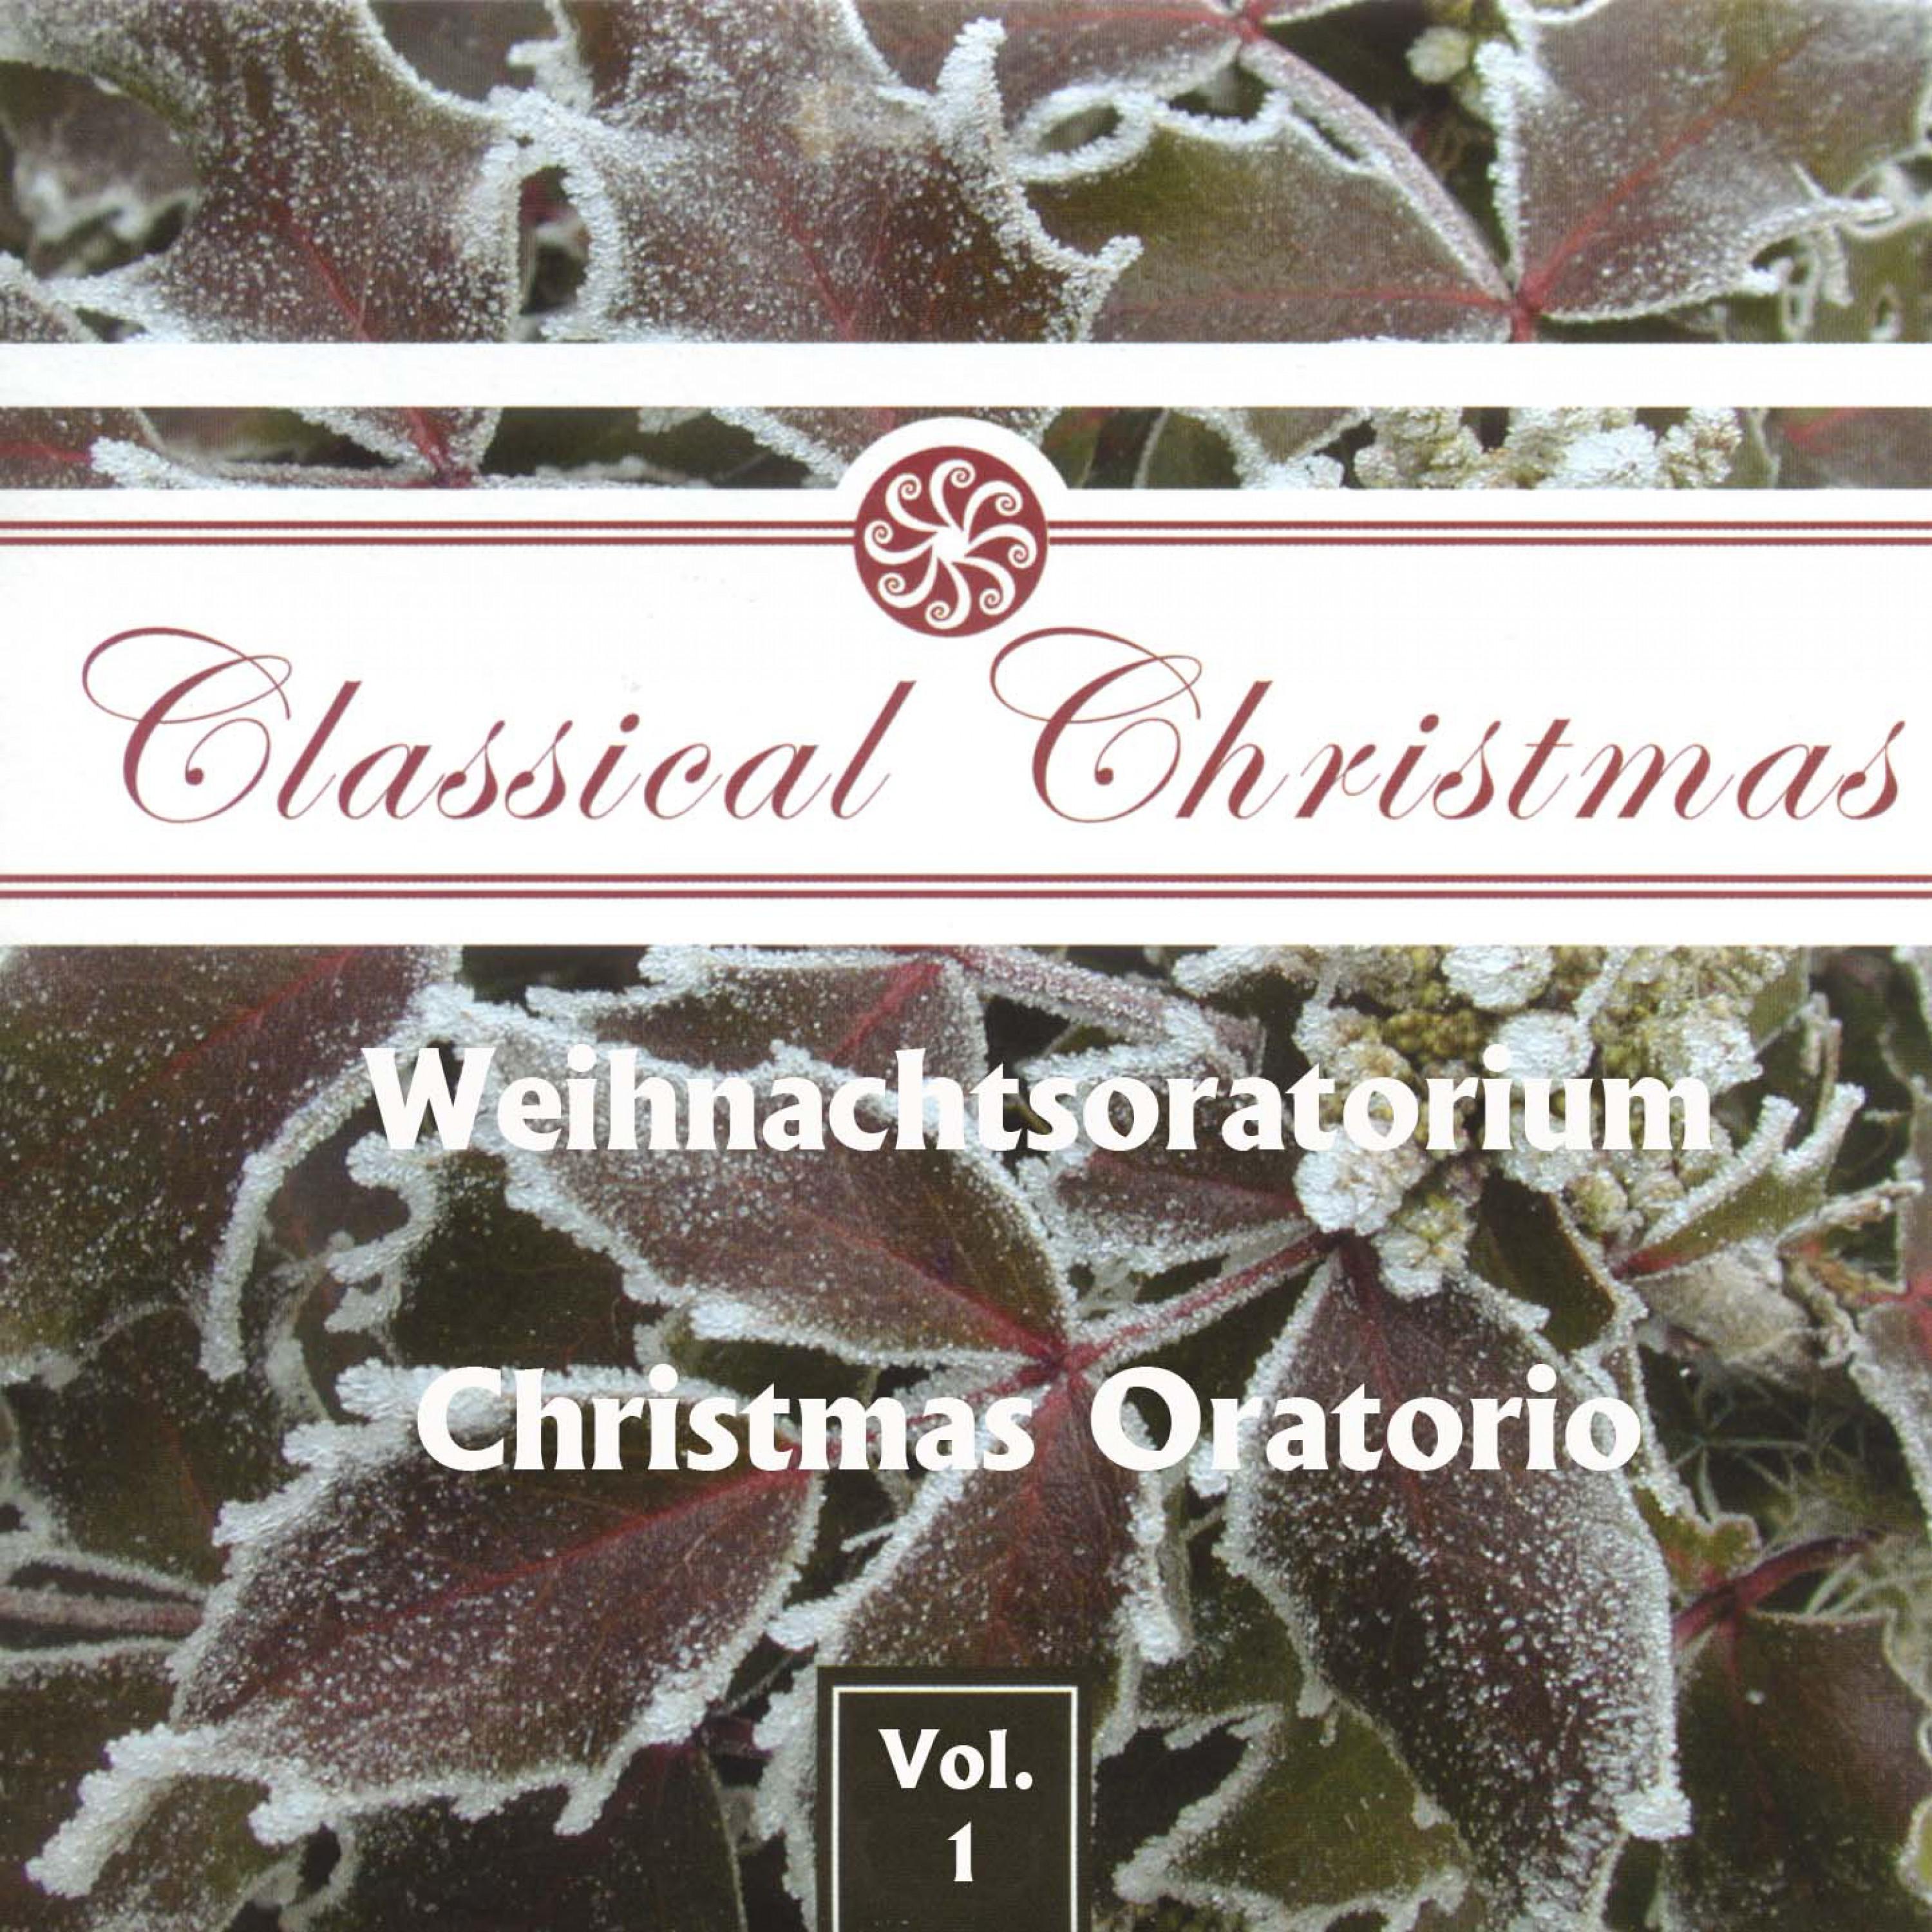 Weihnachtsoratorium, BWV 248  Christmas Oratorio, BWV 248, Teil II  Part II: Was Gott dem Abraham verhei en